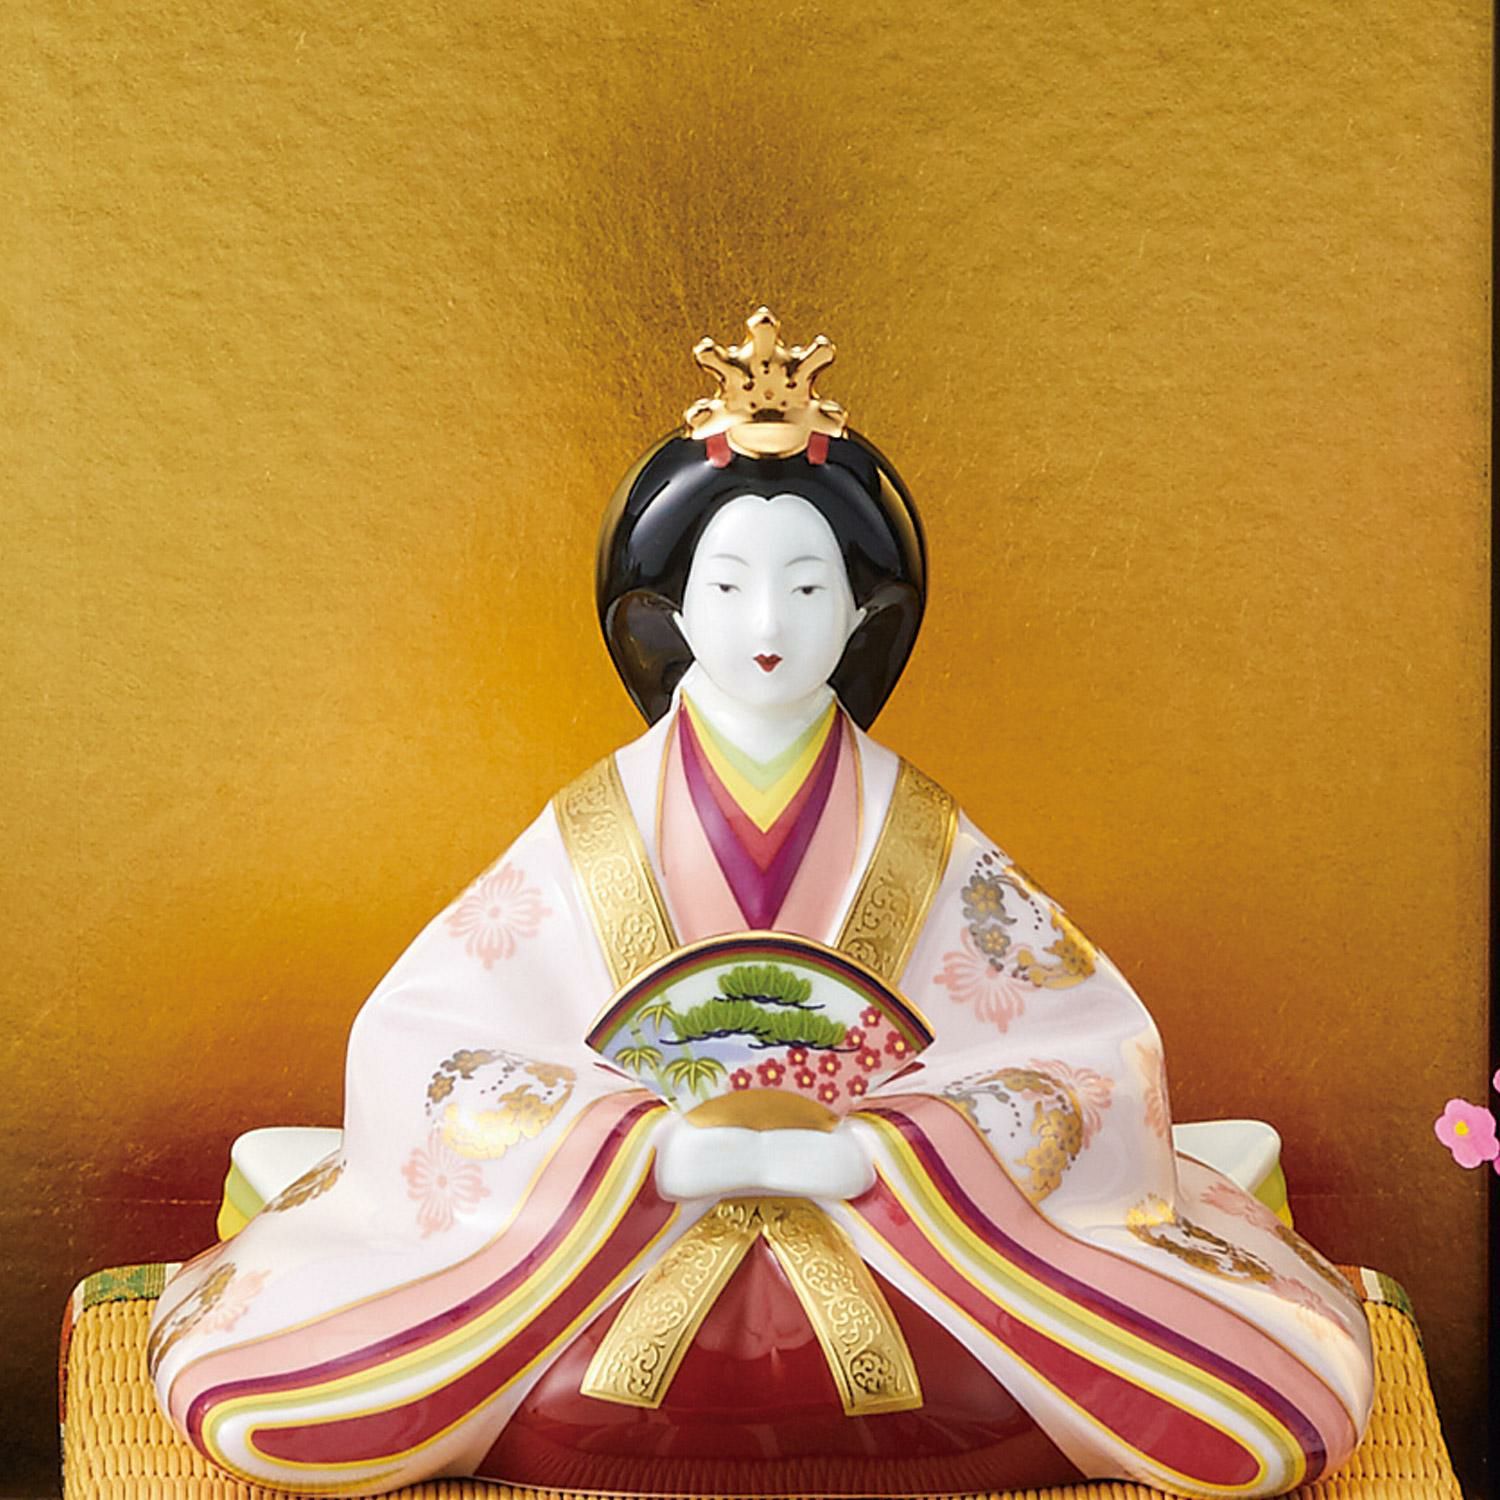  Tượng sứ Thiên Hoàng - Hoàng Hậu triều đại Heian (794 - 1185) Nhật Bản | Sajiki Collection AC307-SK2656 